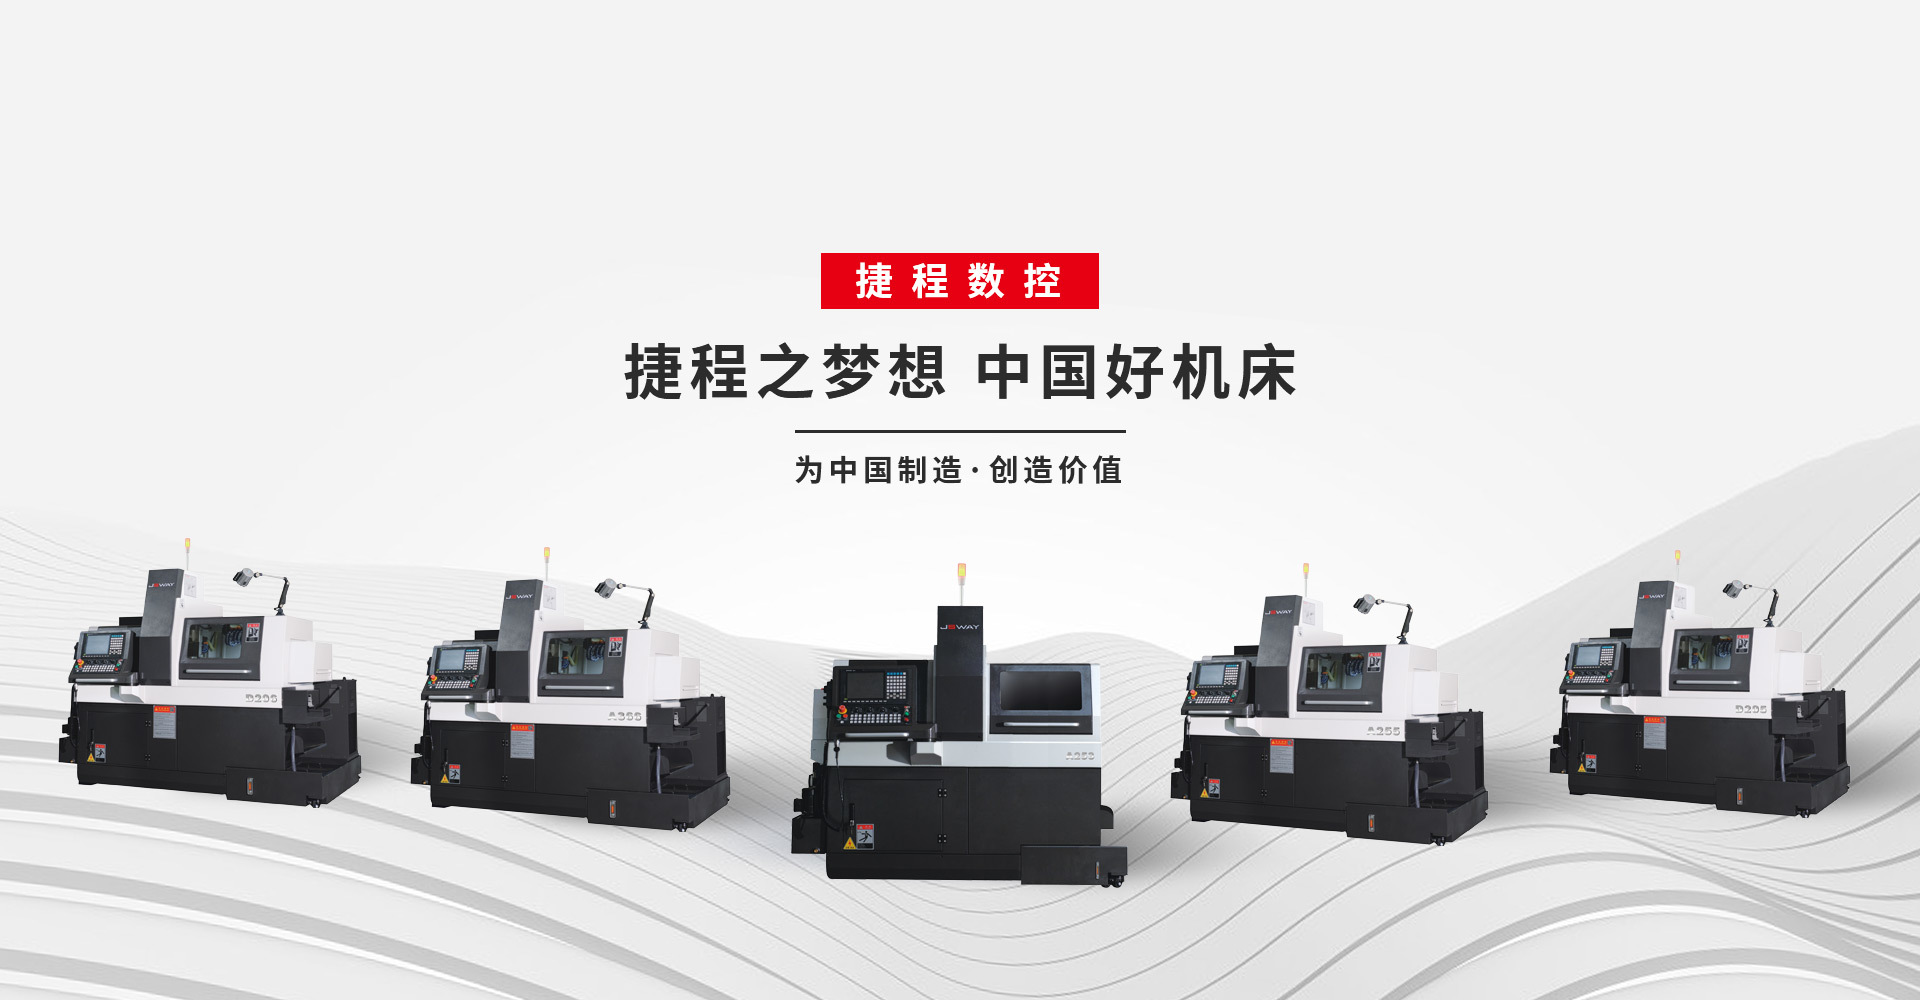 广东捷程数控机床有限公司主要生产：双主轴车铣复合，车铣复合，刀塔机，走心机，车削设备